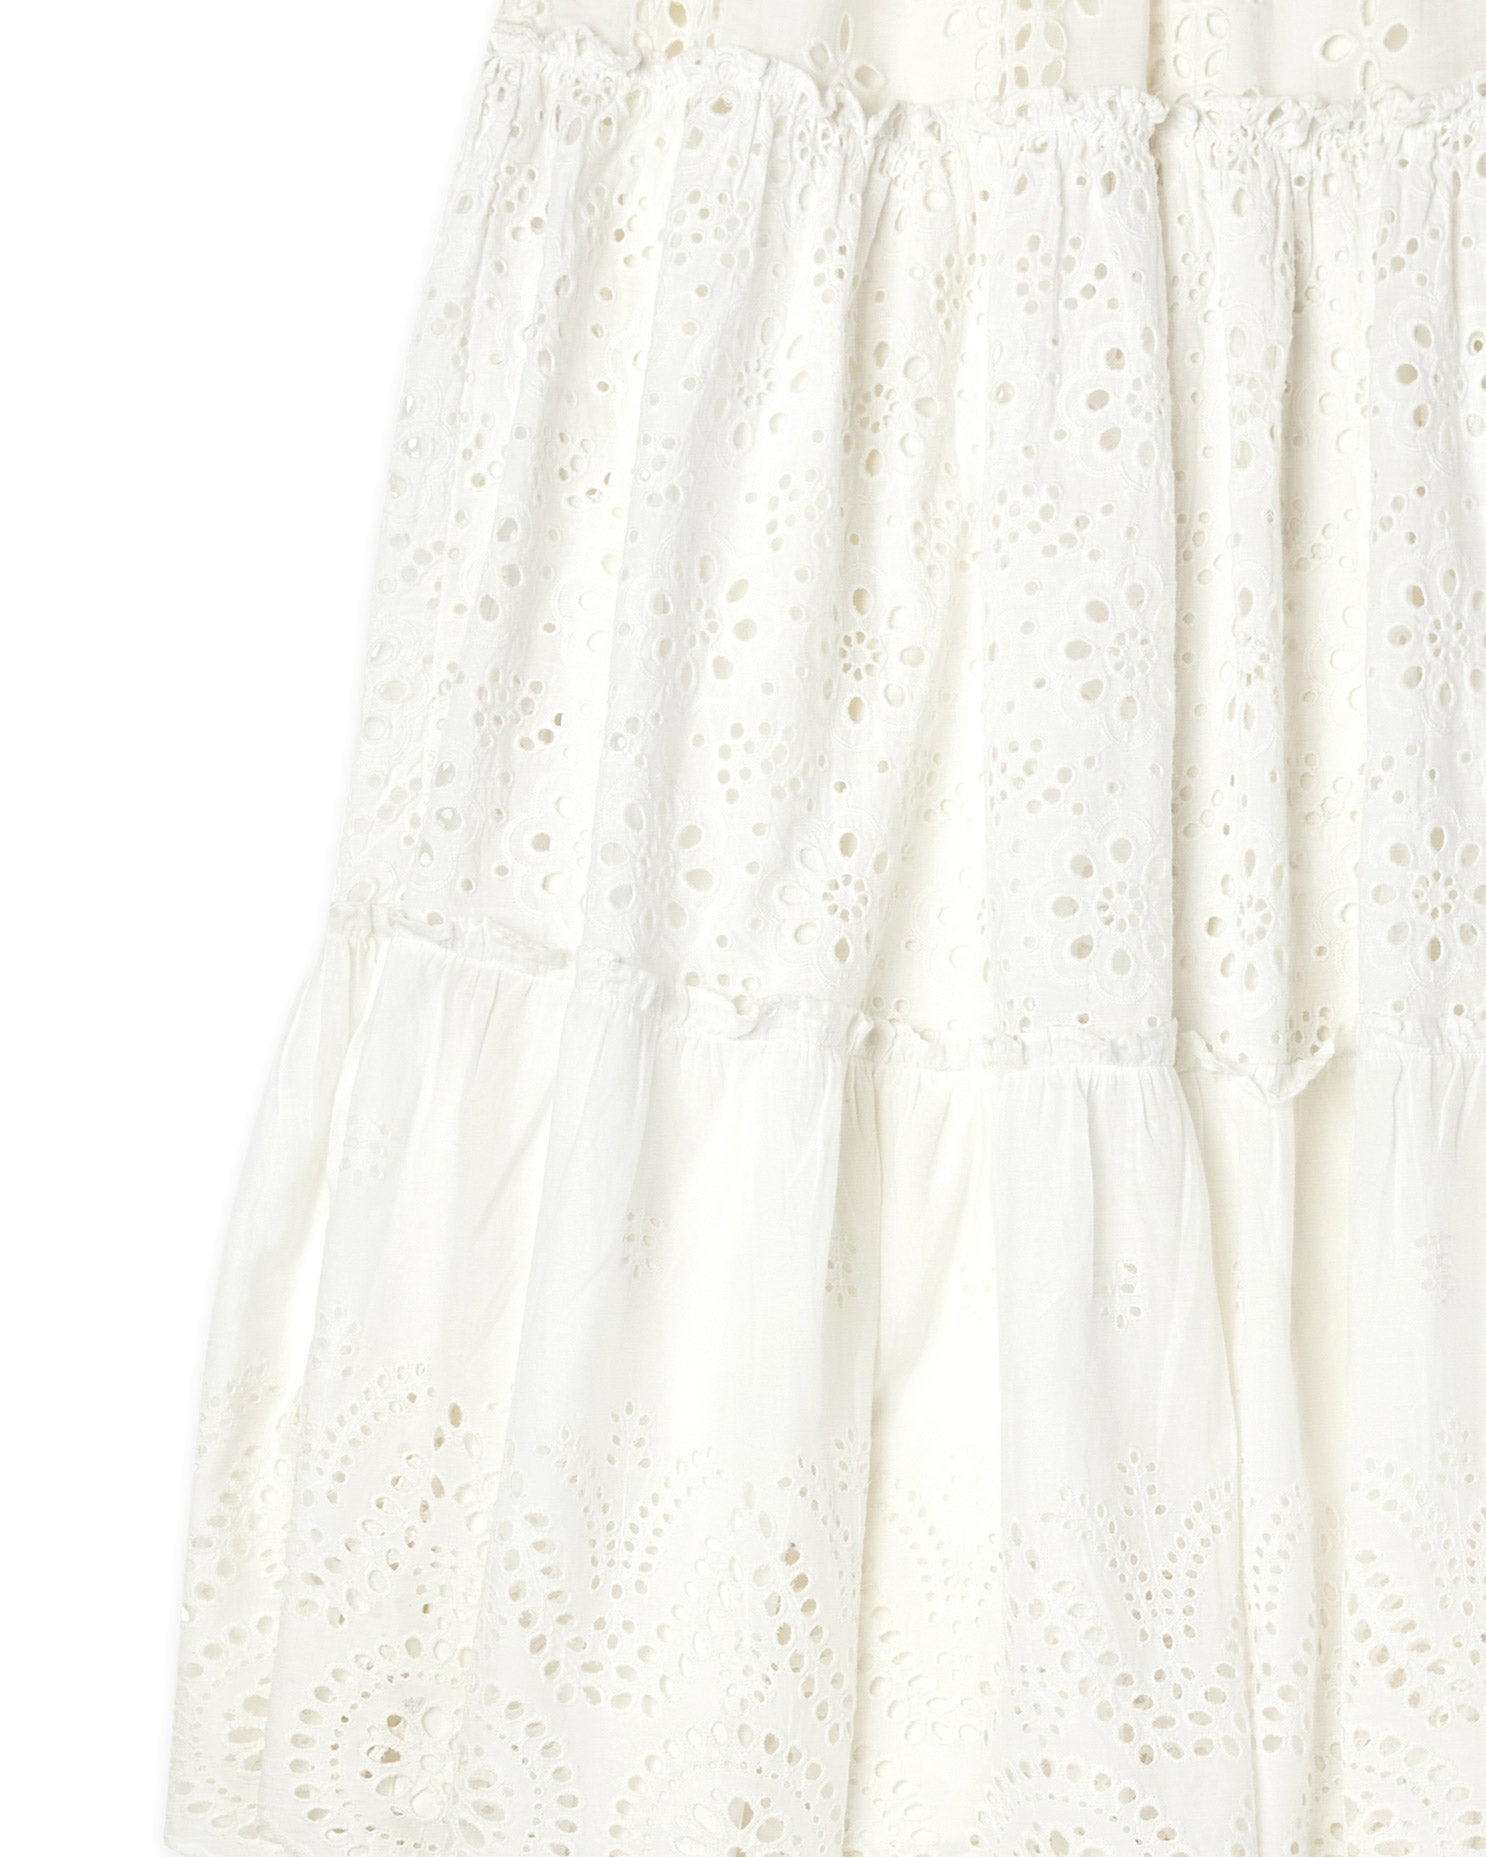 Penelope Skirt in White